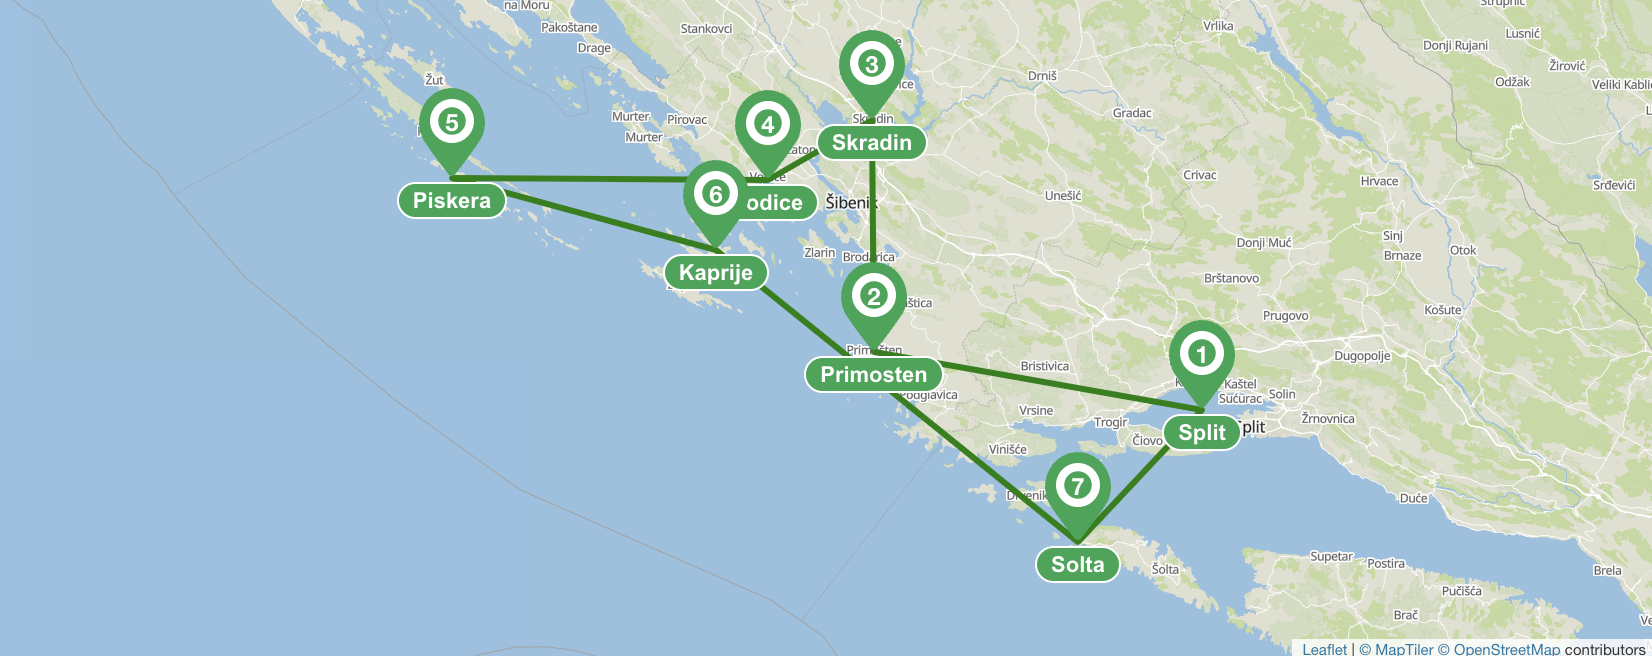 Itinéraire de navigation à Split (Nord) - 7 jours